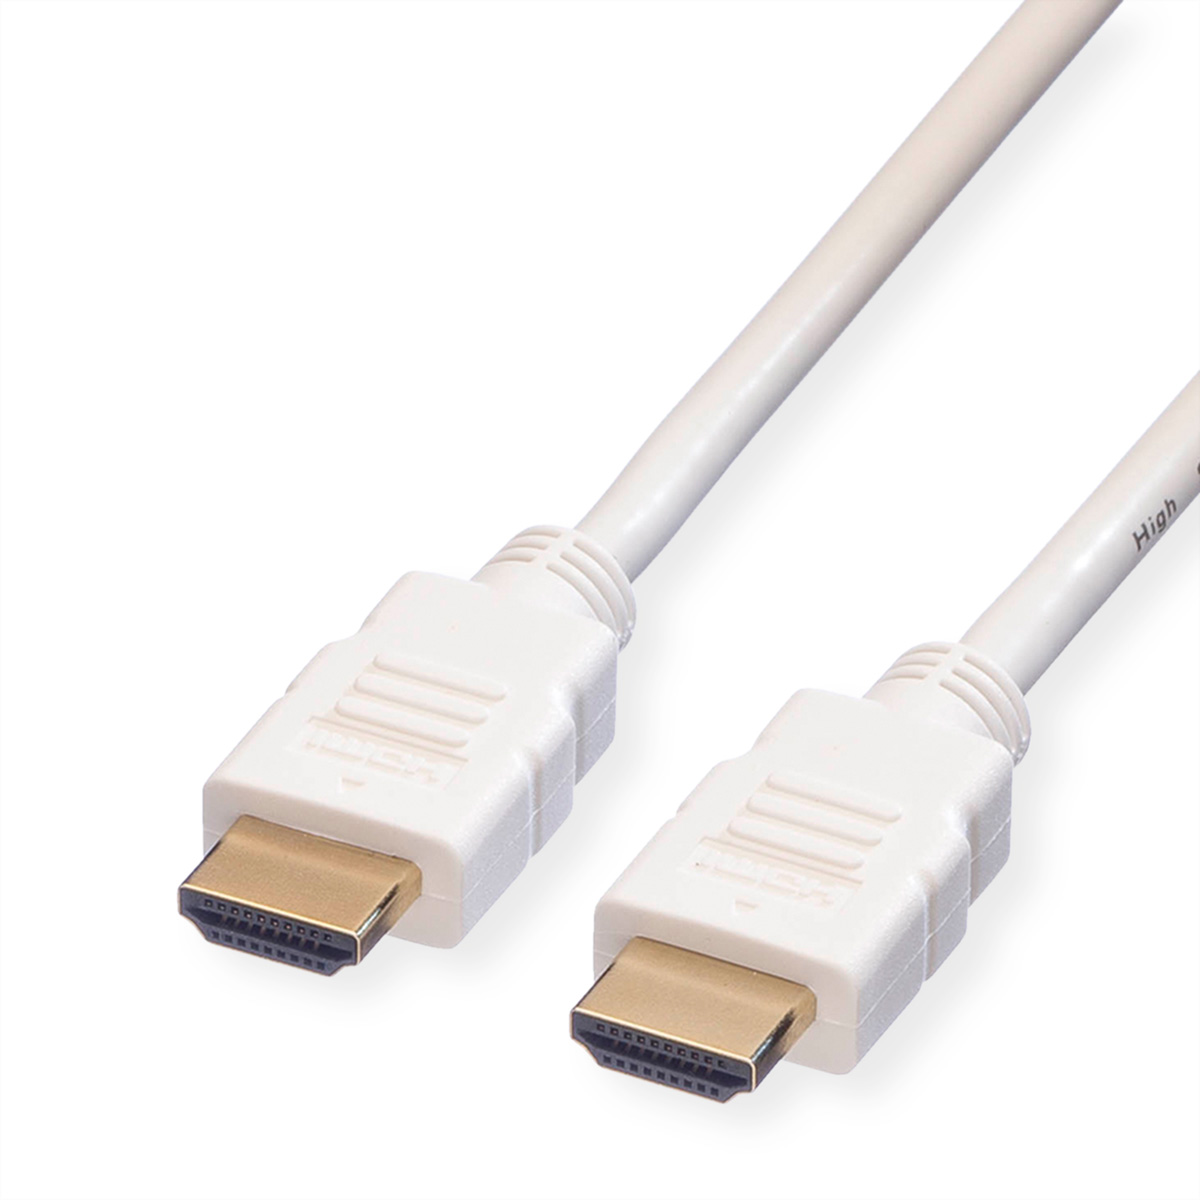 ROLINE HDMI High Speed Kabel mit Ethernet weiss 2m